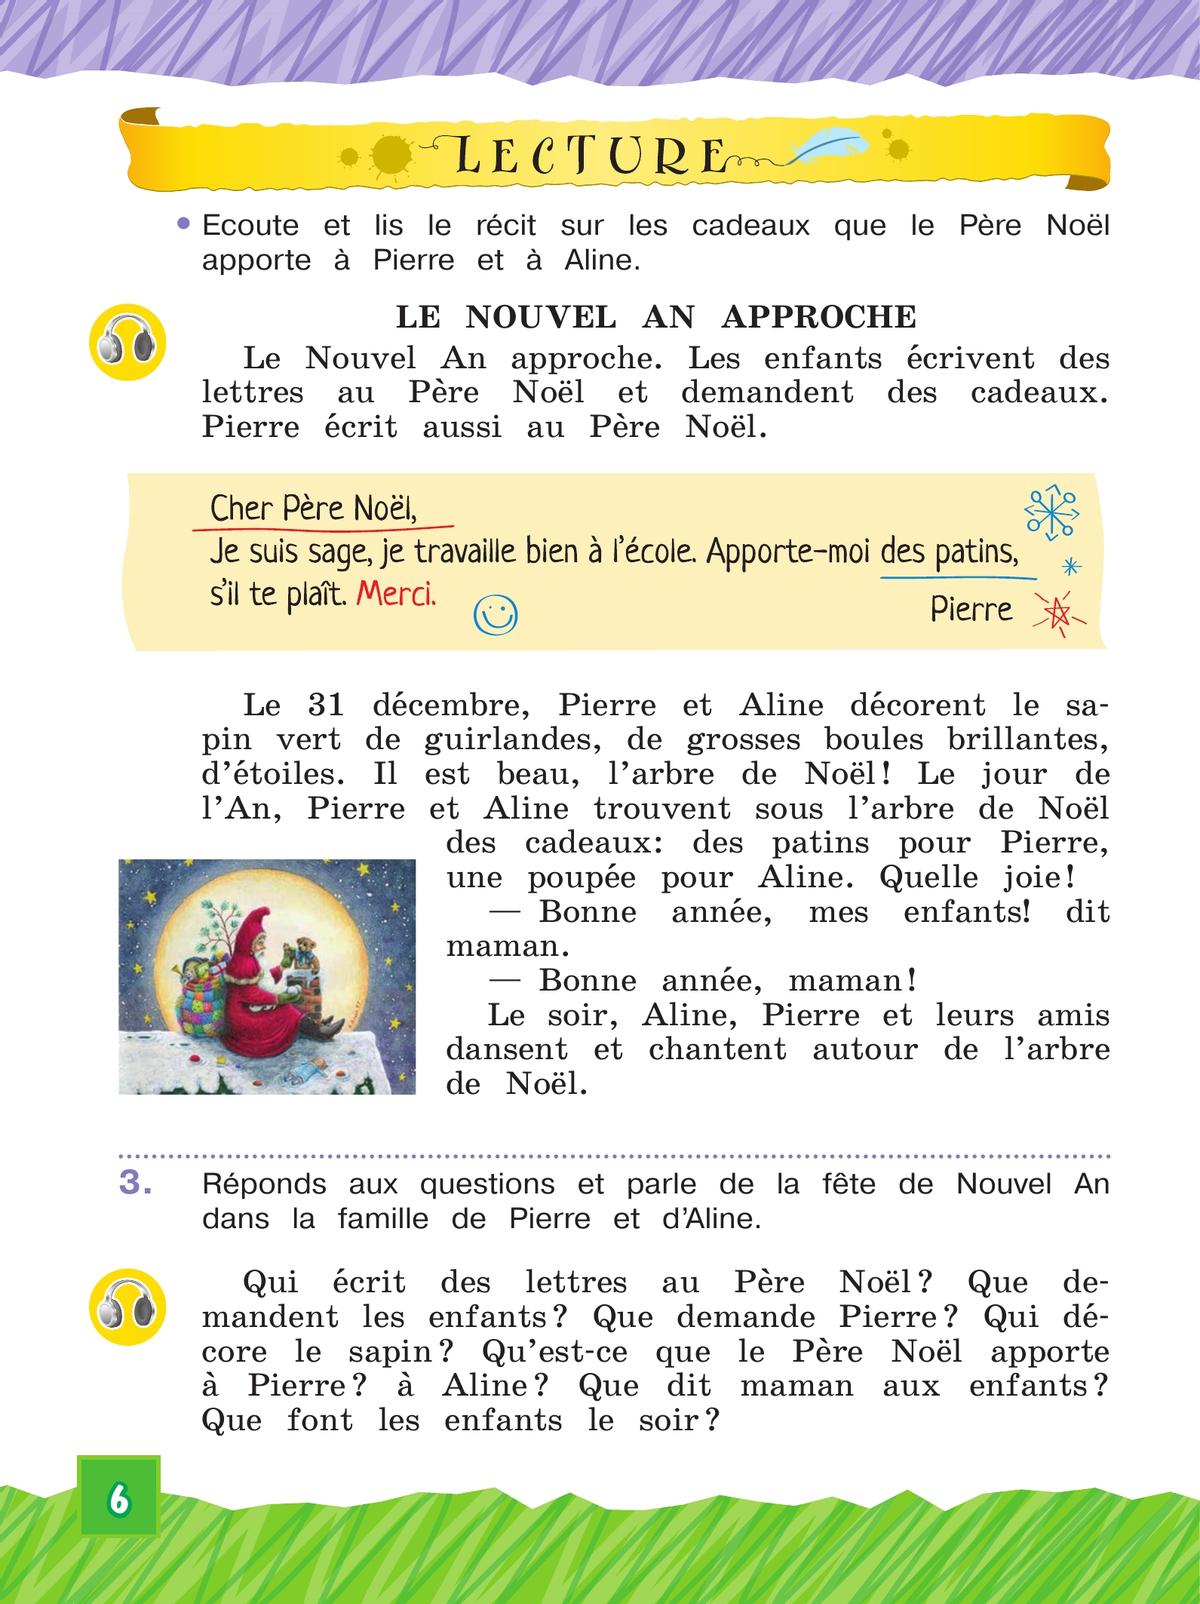 Французский язык. 3 класс. Учебник. В 2 ч. Часть 2. Углублённый уровень 4